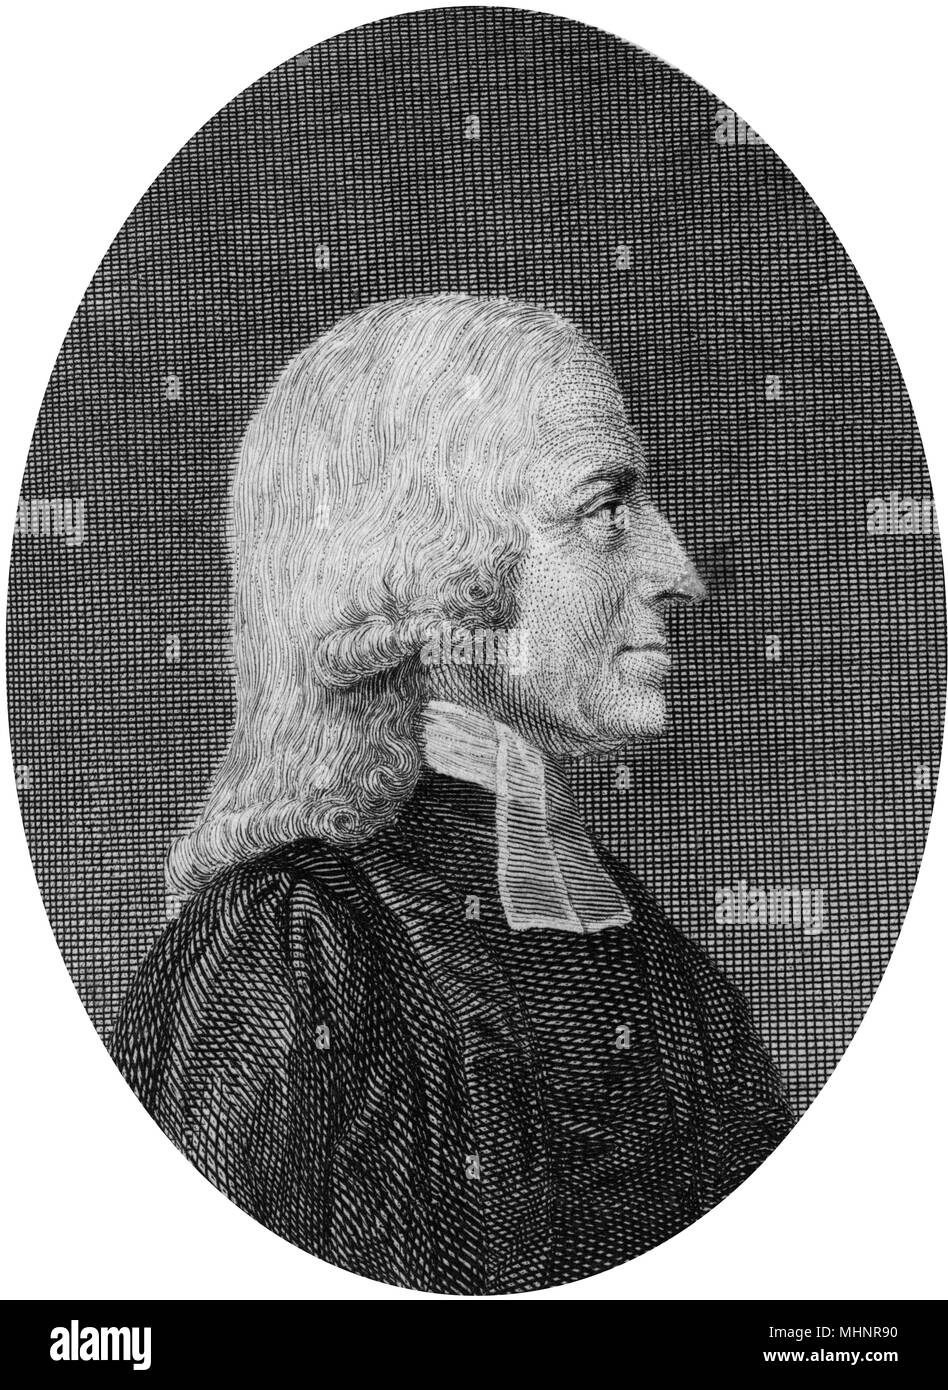 John Wesley (1703-1791) - sacerdote y teólogo británico - fundador del metodismo, metodistas, perfil, cara lateral, peluca, albornoz, banda Fecha: circa 1780 Foto de stock